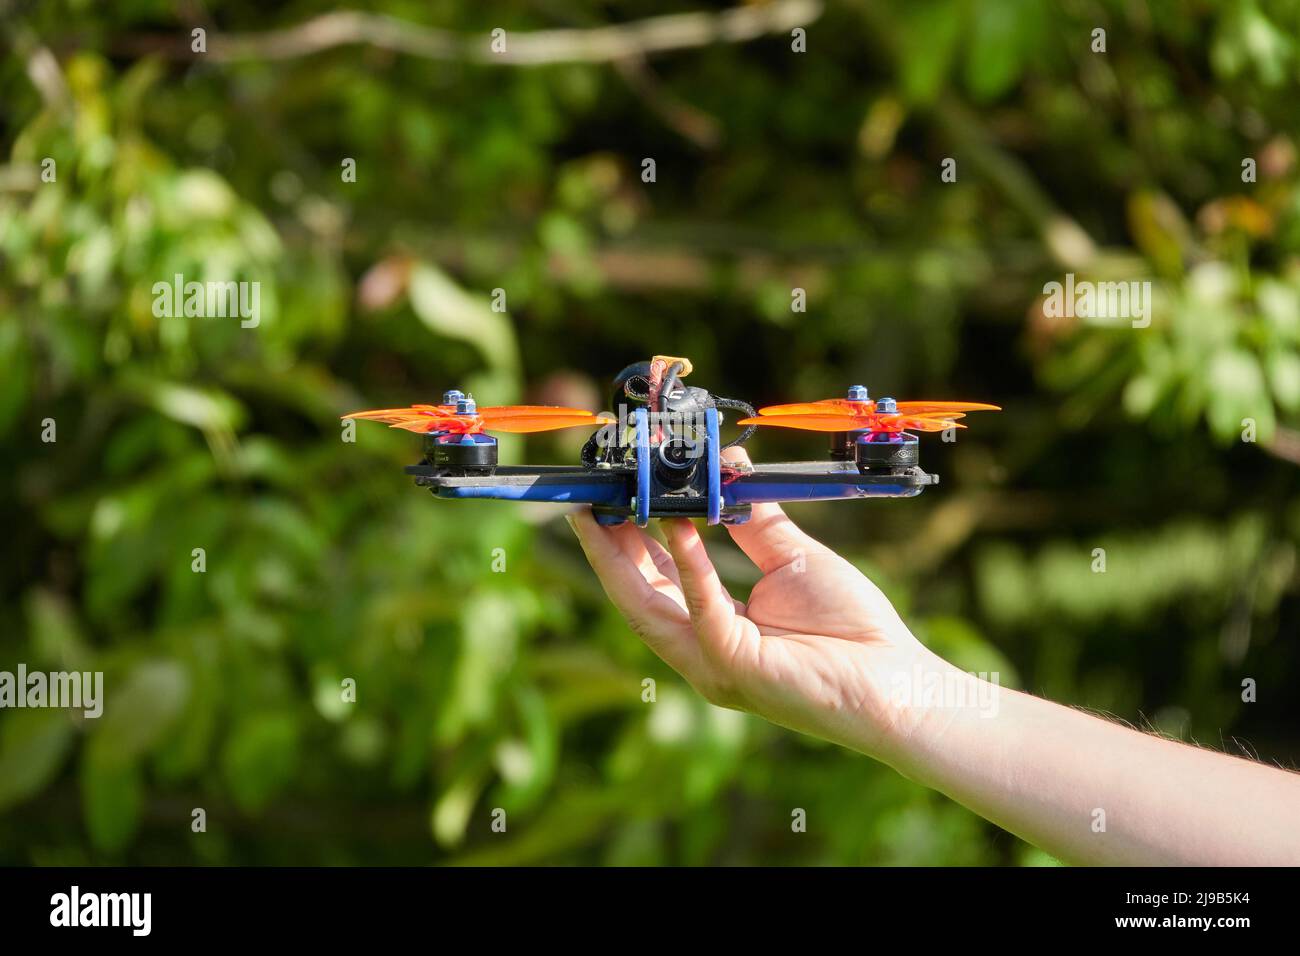 Le drone noir également quad de course, avec hélice orange, est tenu par les mains humaines. Herbe floue en arrière-plan. Allemagne. Banque D'Images